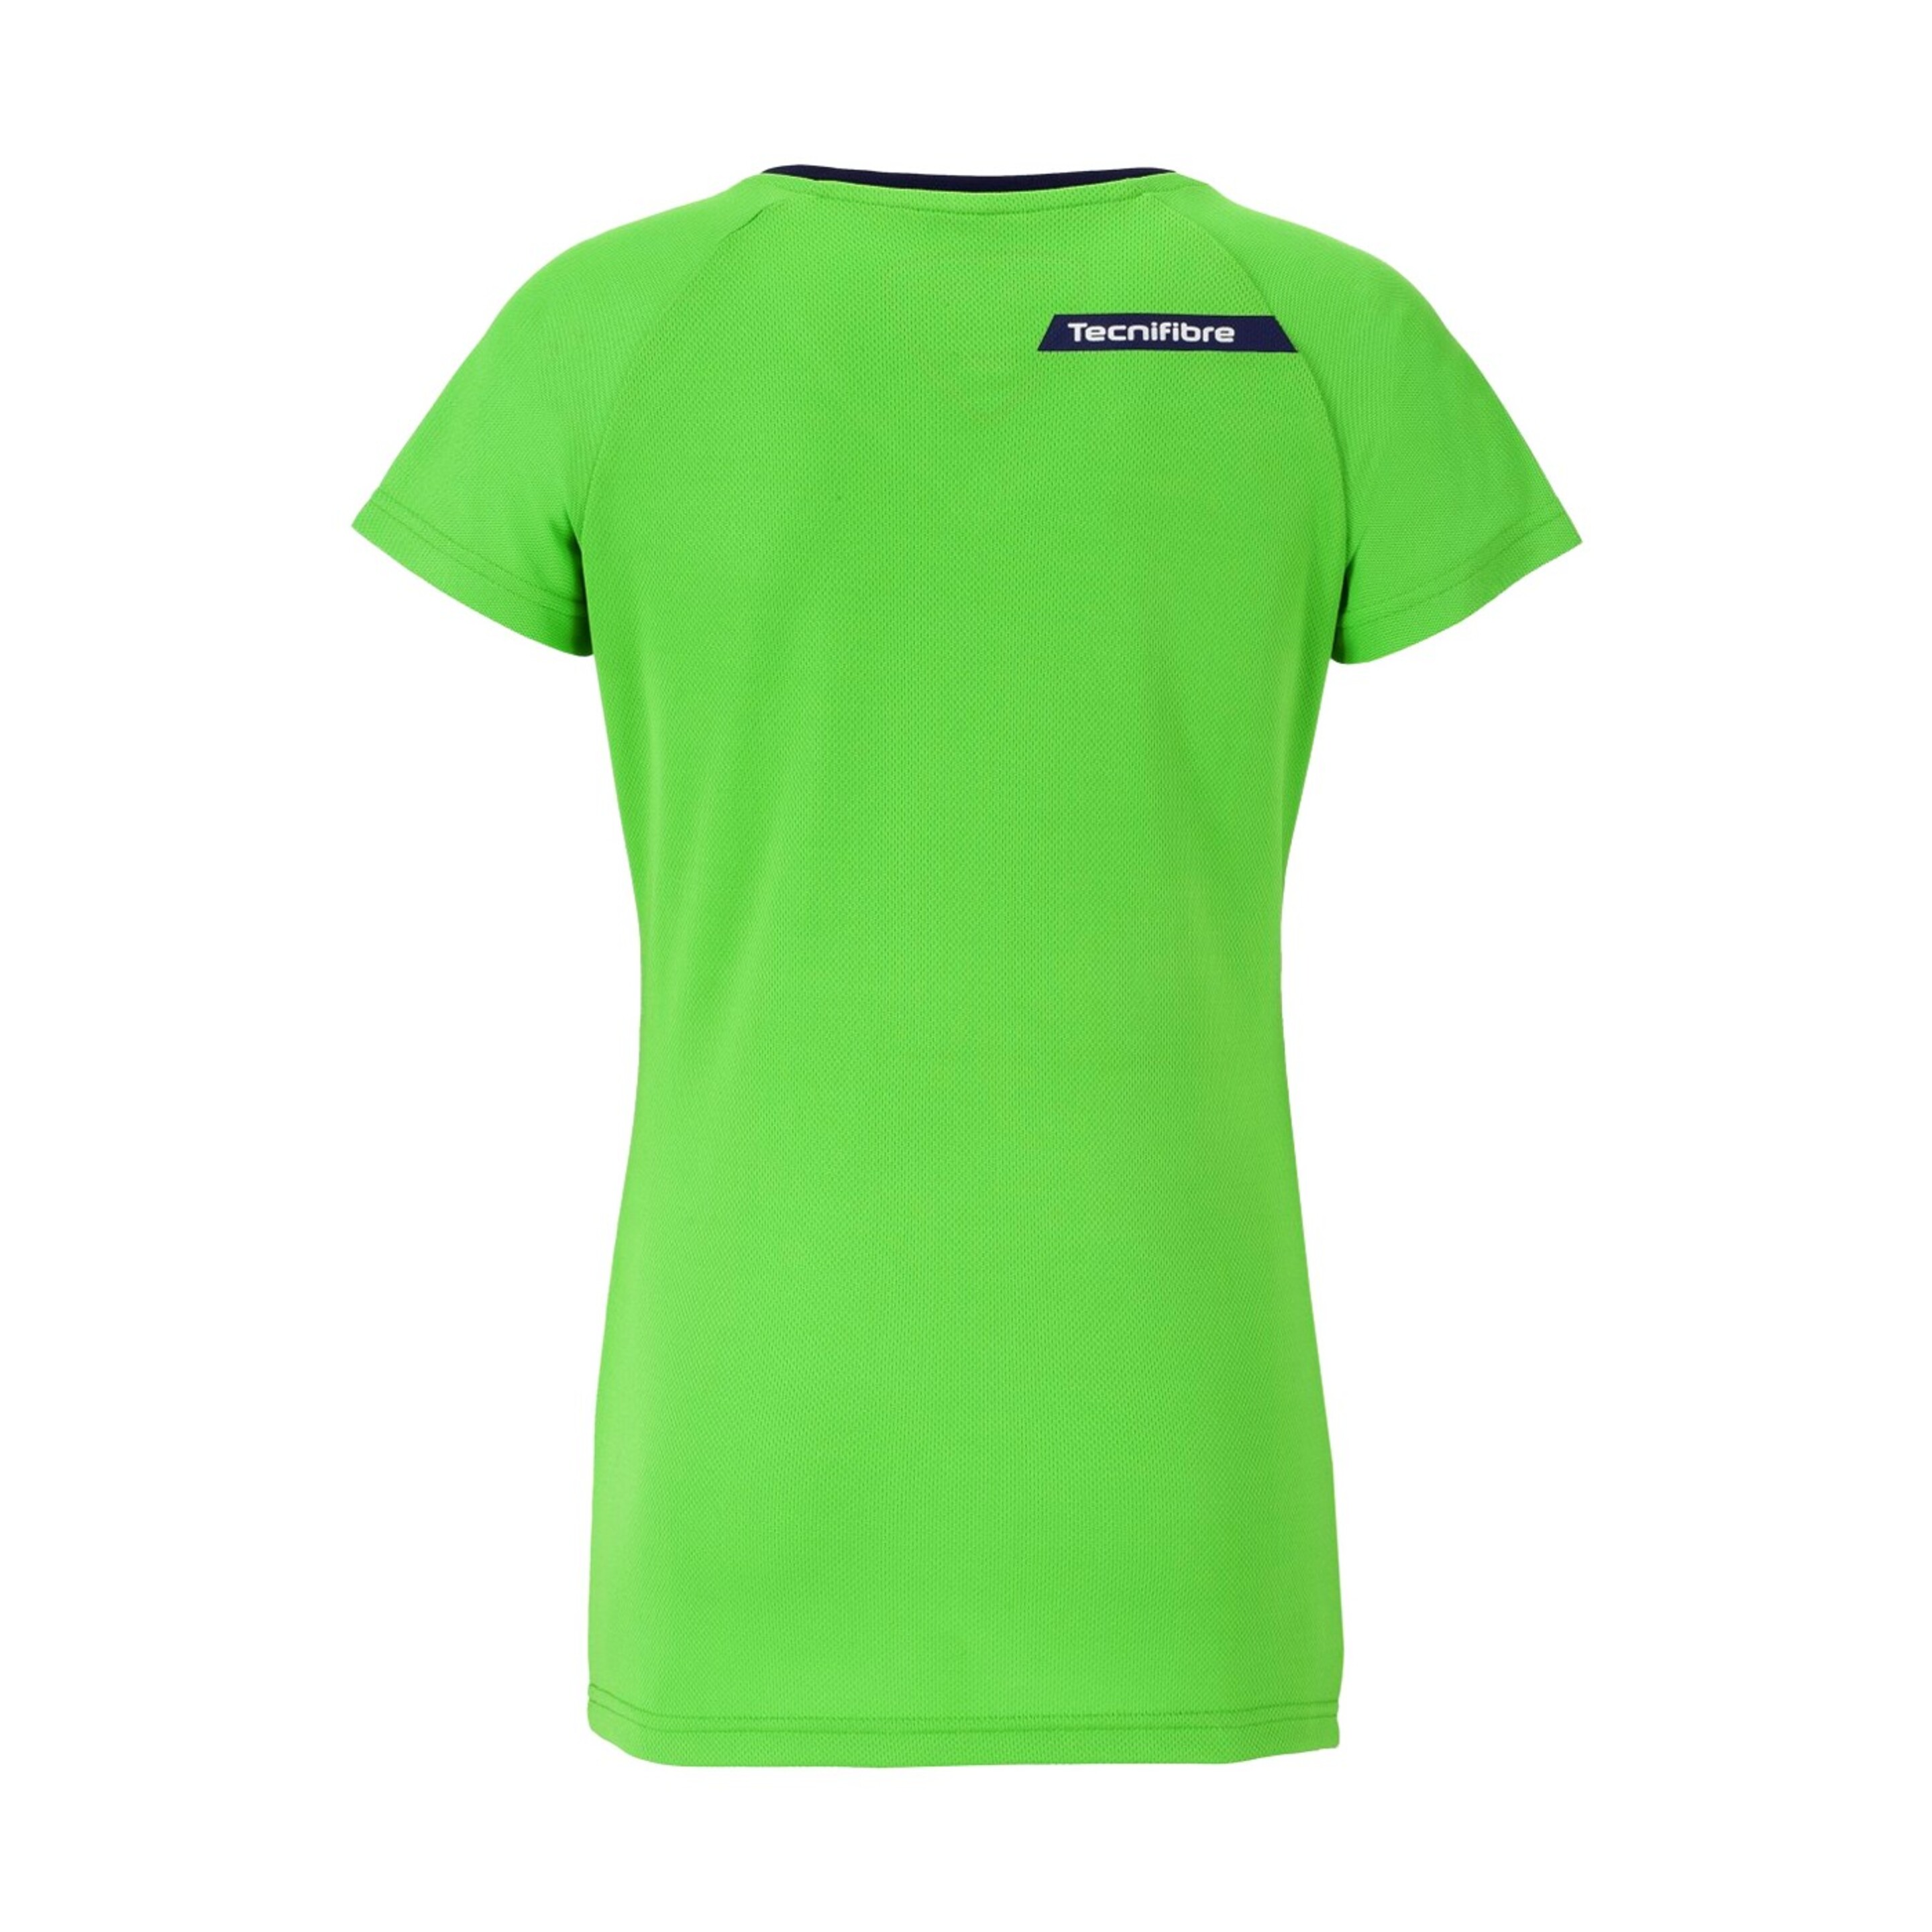 Camiseta Feminina Tecnifibre F2 Verde